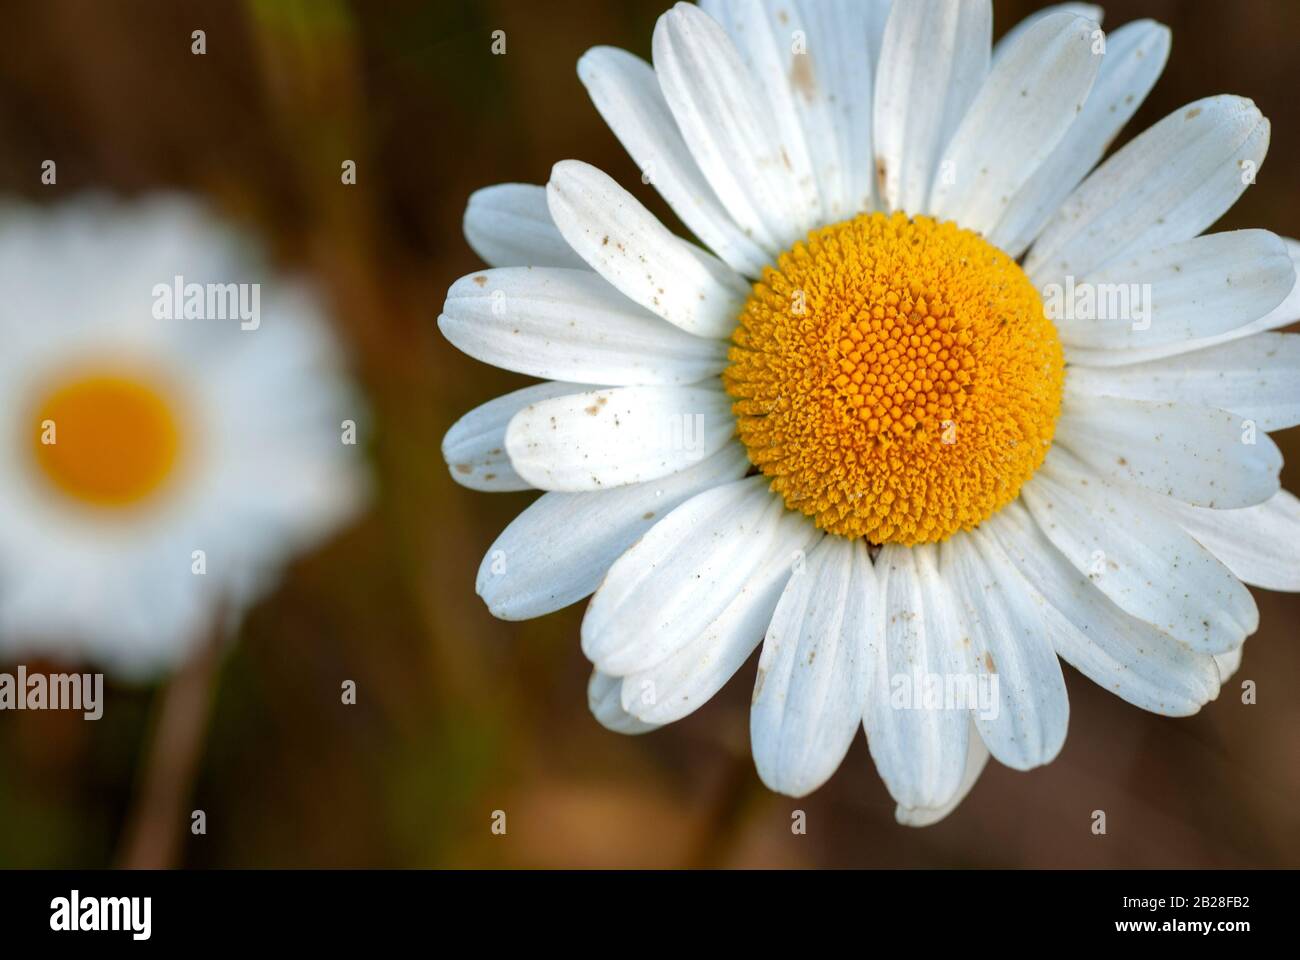 Gros plan et image isolée d'une fleur de Marguerite blanche et jaune avec des pédales blanches recouvertes de pollen et un arrière-plan obscur Banque D'Images